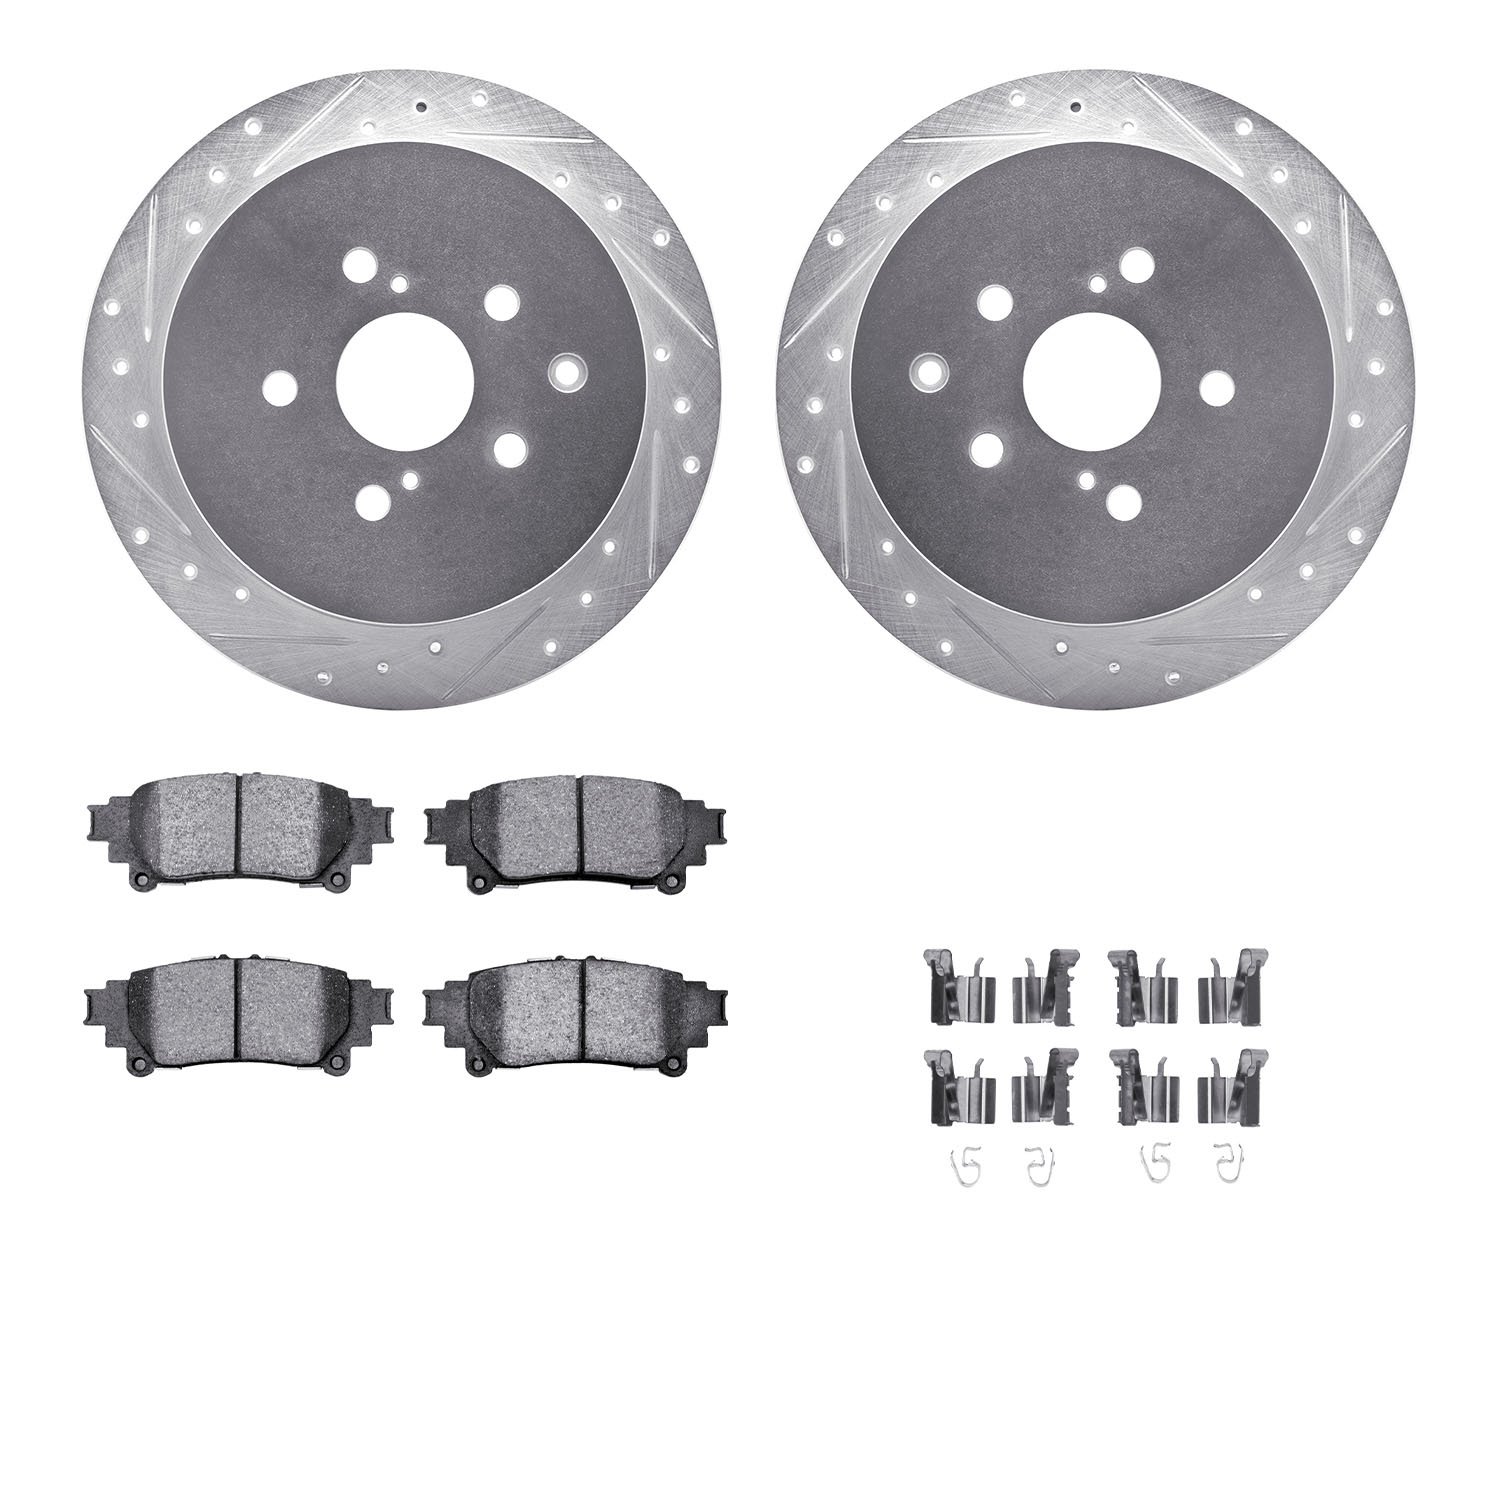 7312-76167 Drilled/Slotted Brake Rotor with 3000-Series Ceramic Brake Pads Kit & Hardware [Silver], 2010-2020 Lexus/Toyota/Scion